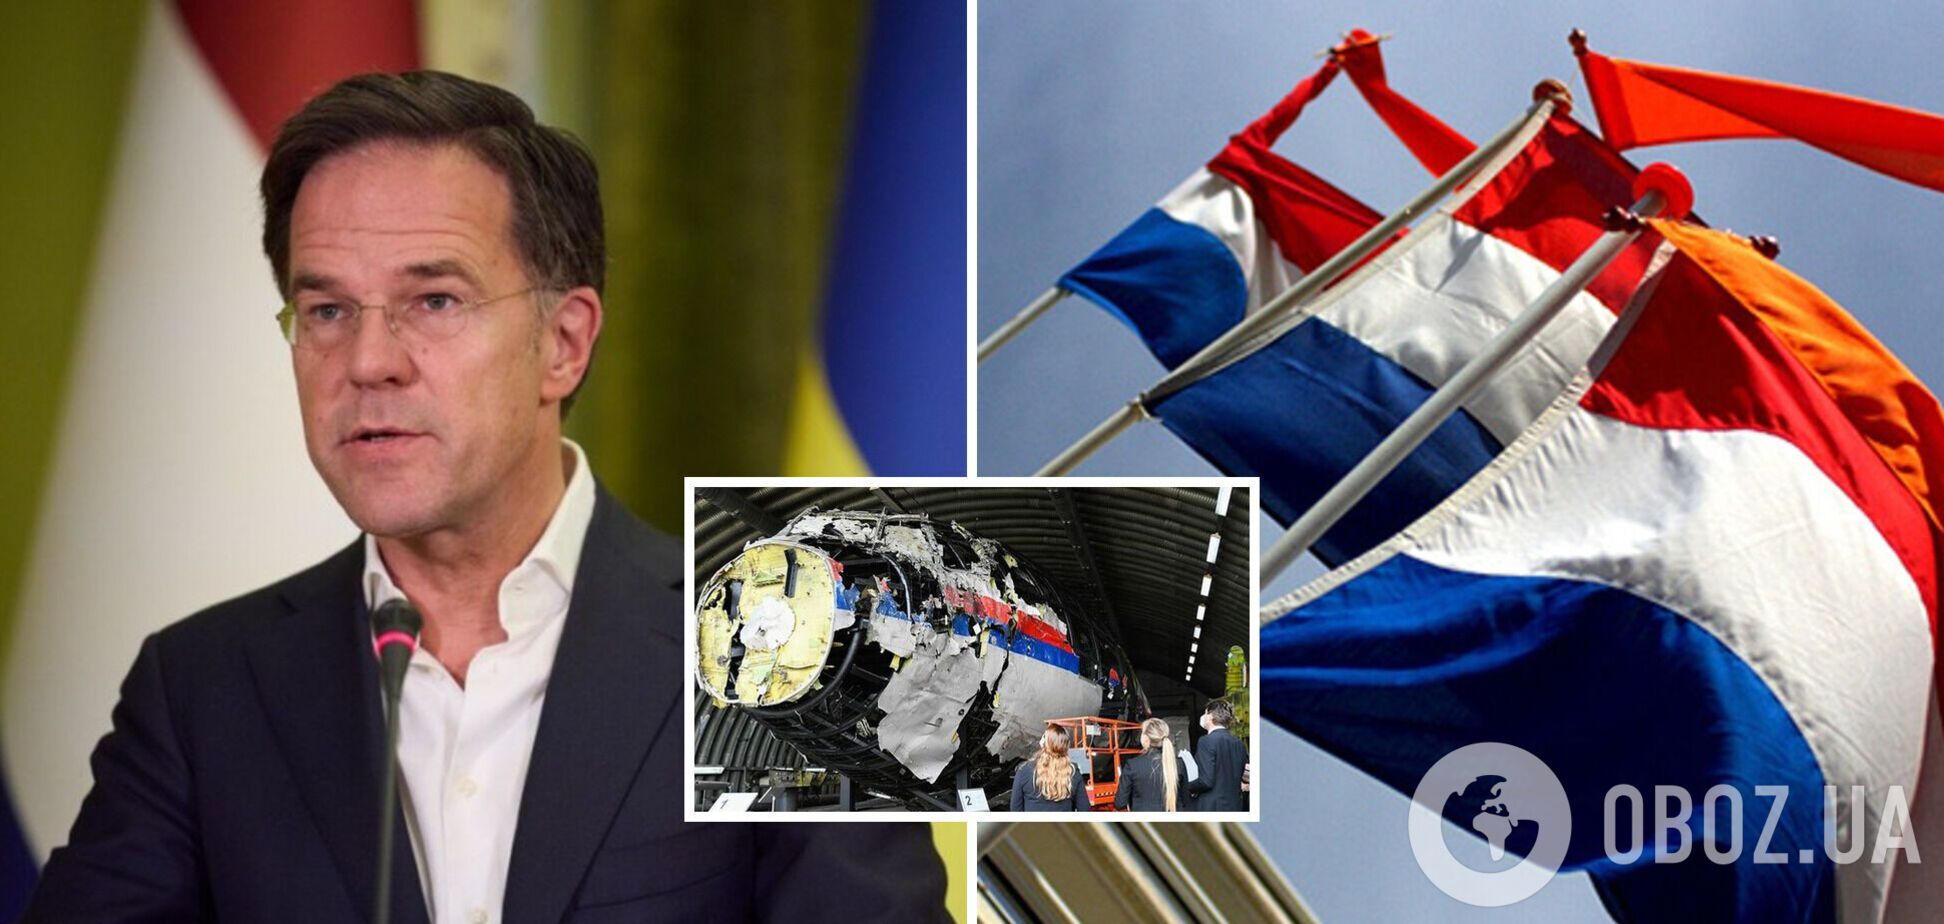 Нидерланды готовят новый иск против России из-за катастрофы МН-17: известны детали